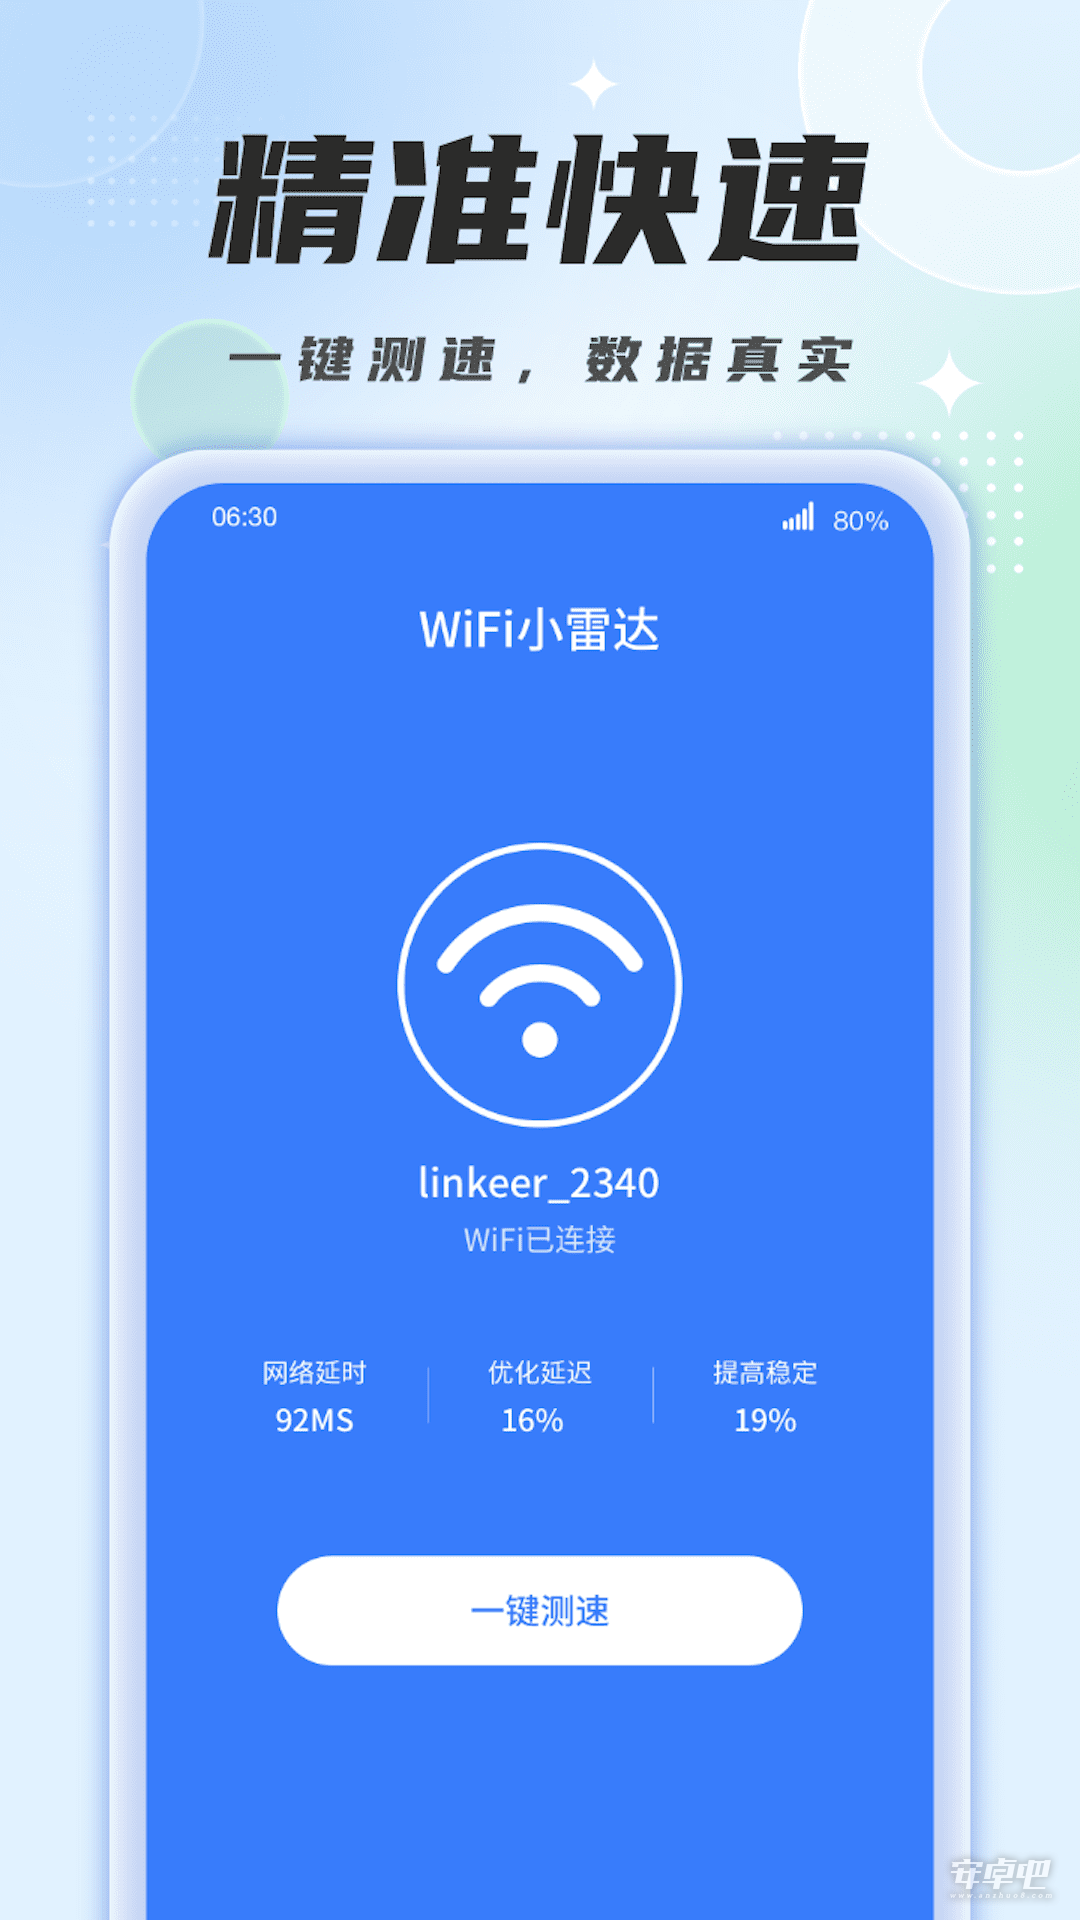 WiFi小雷达1